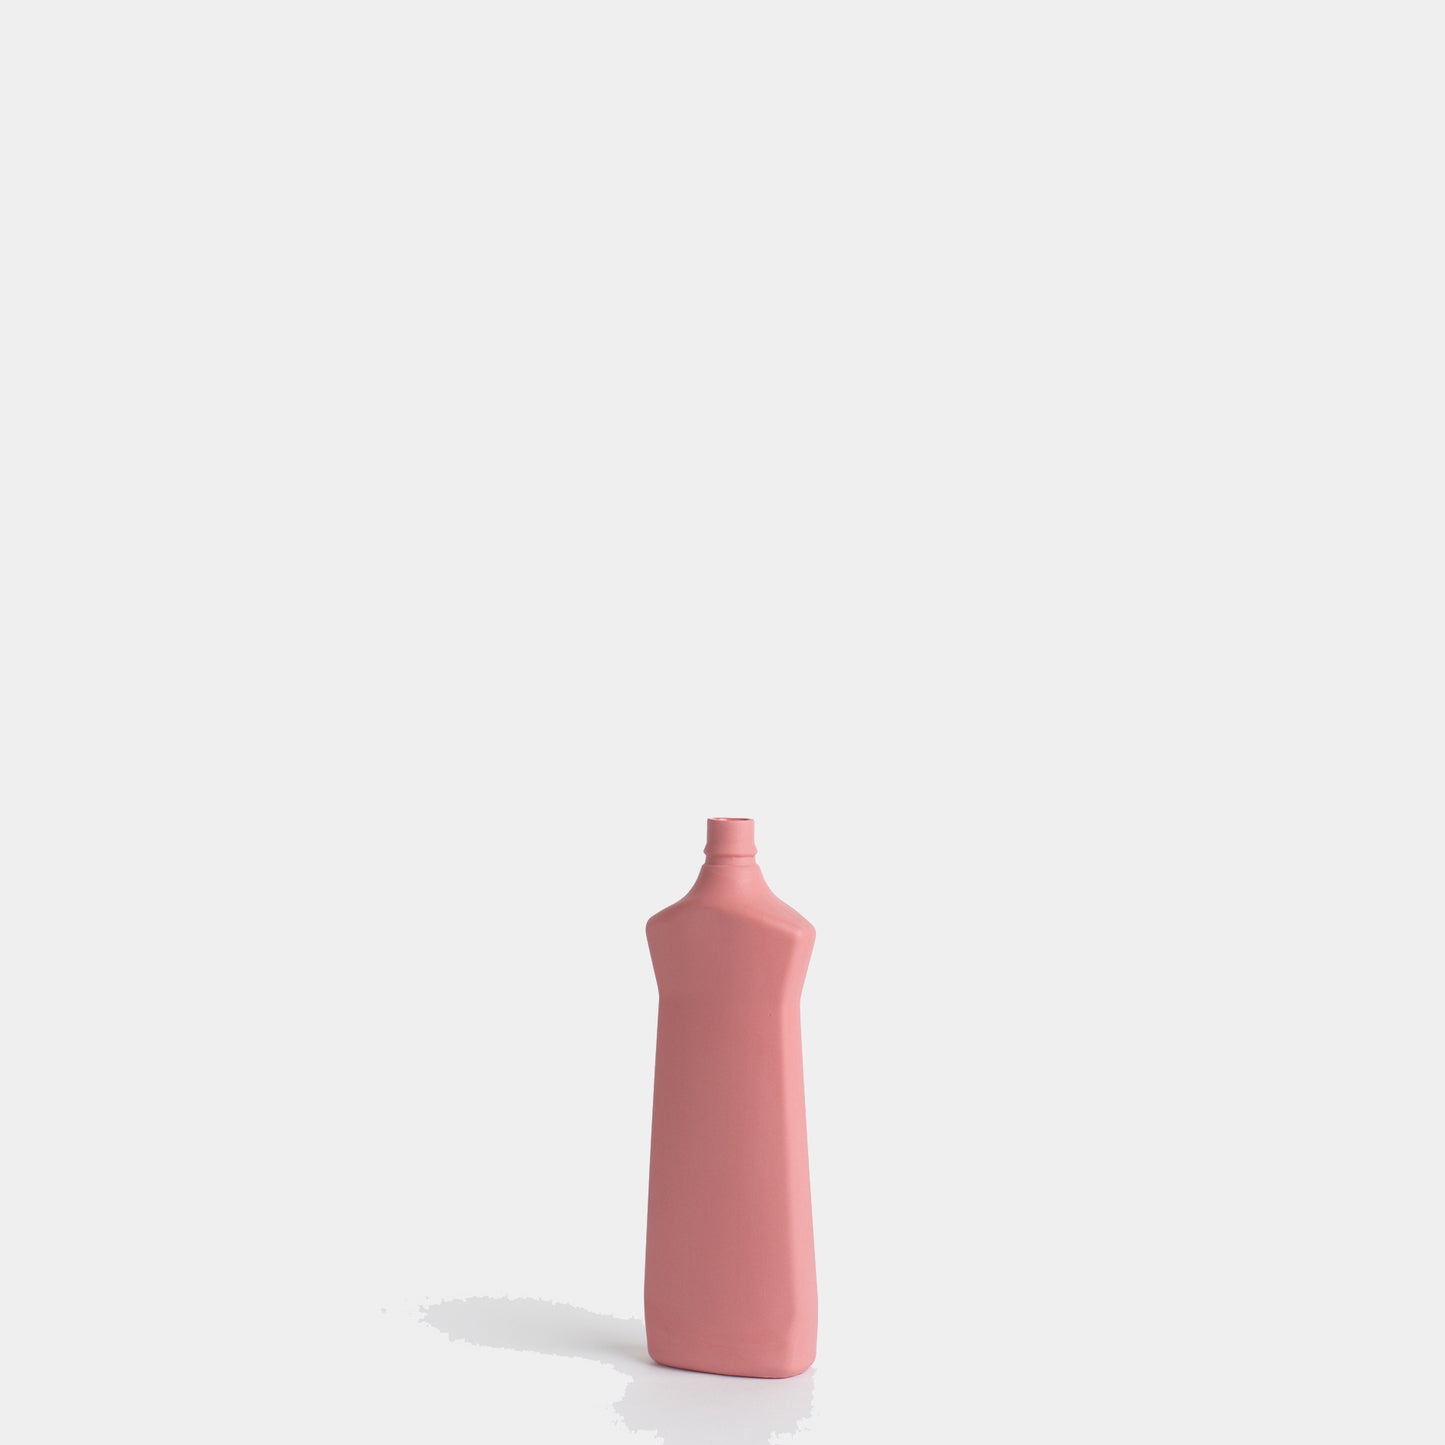 Porcelain Bottle Vase #1 - old red